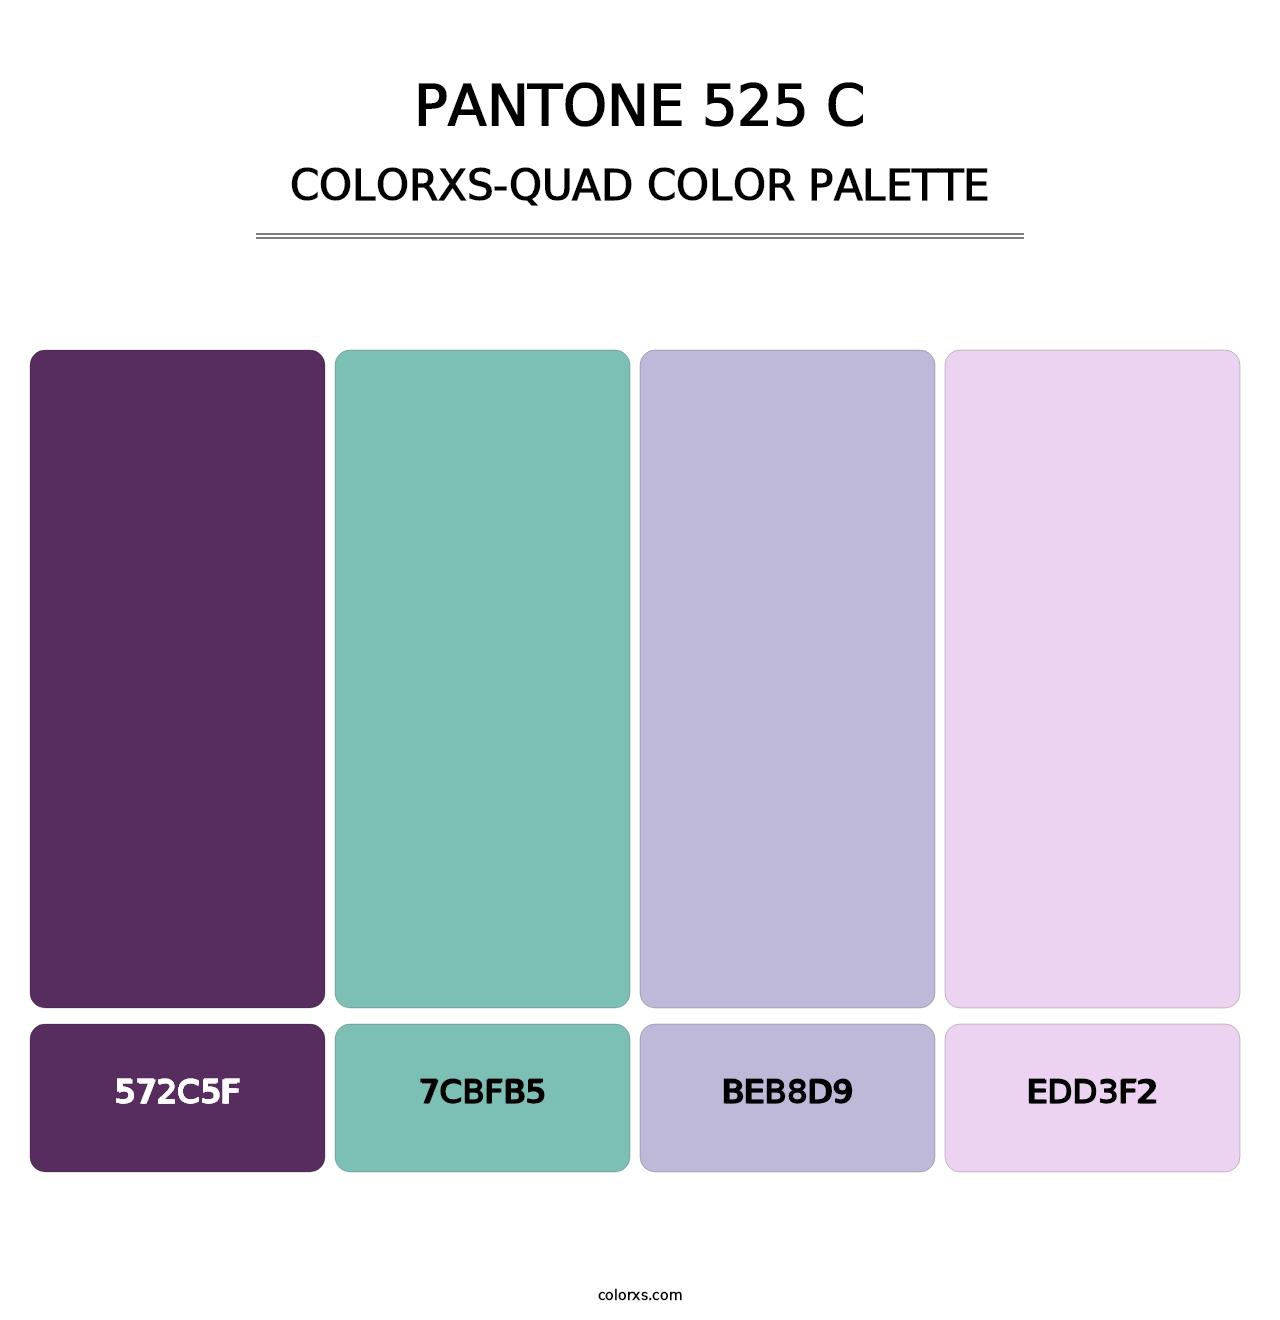 PANTONE 525 C - Colorxs Quad Palette